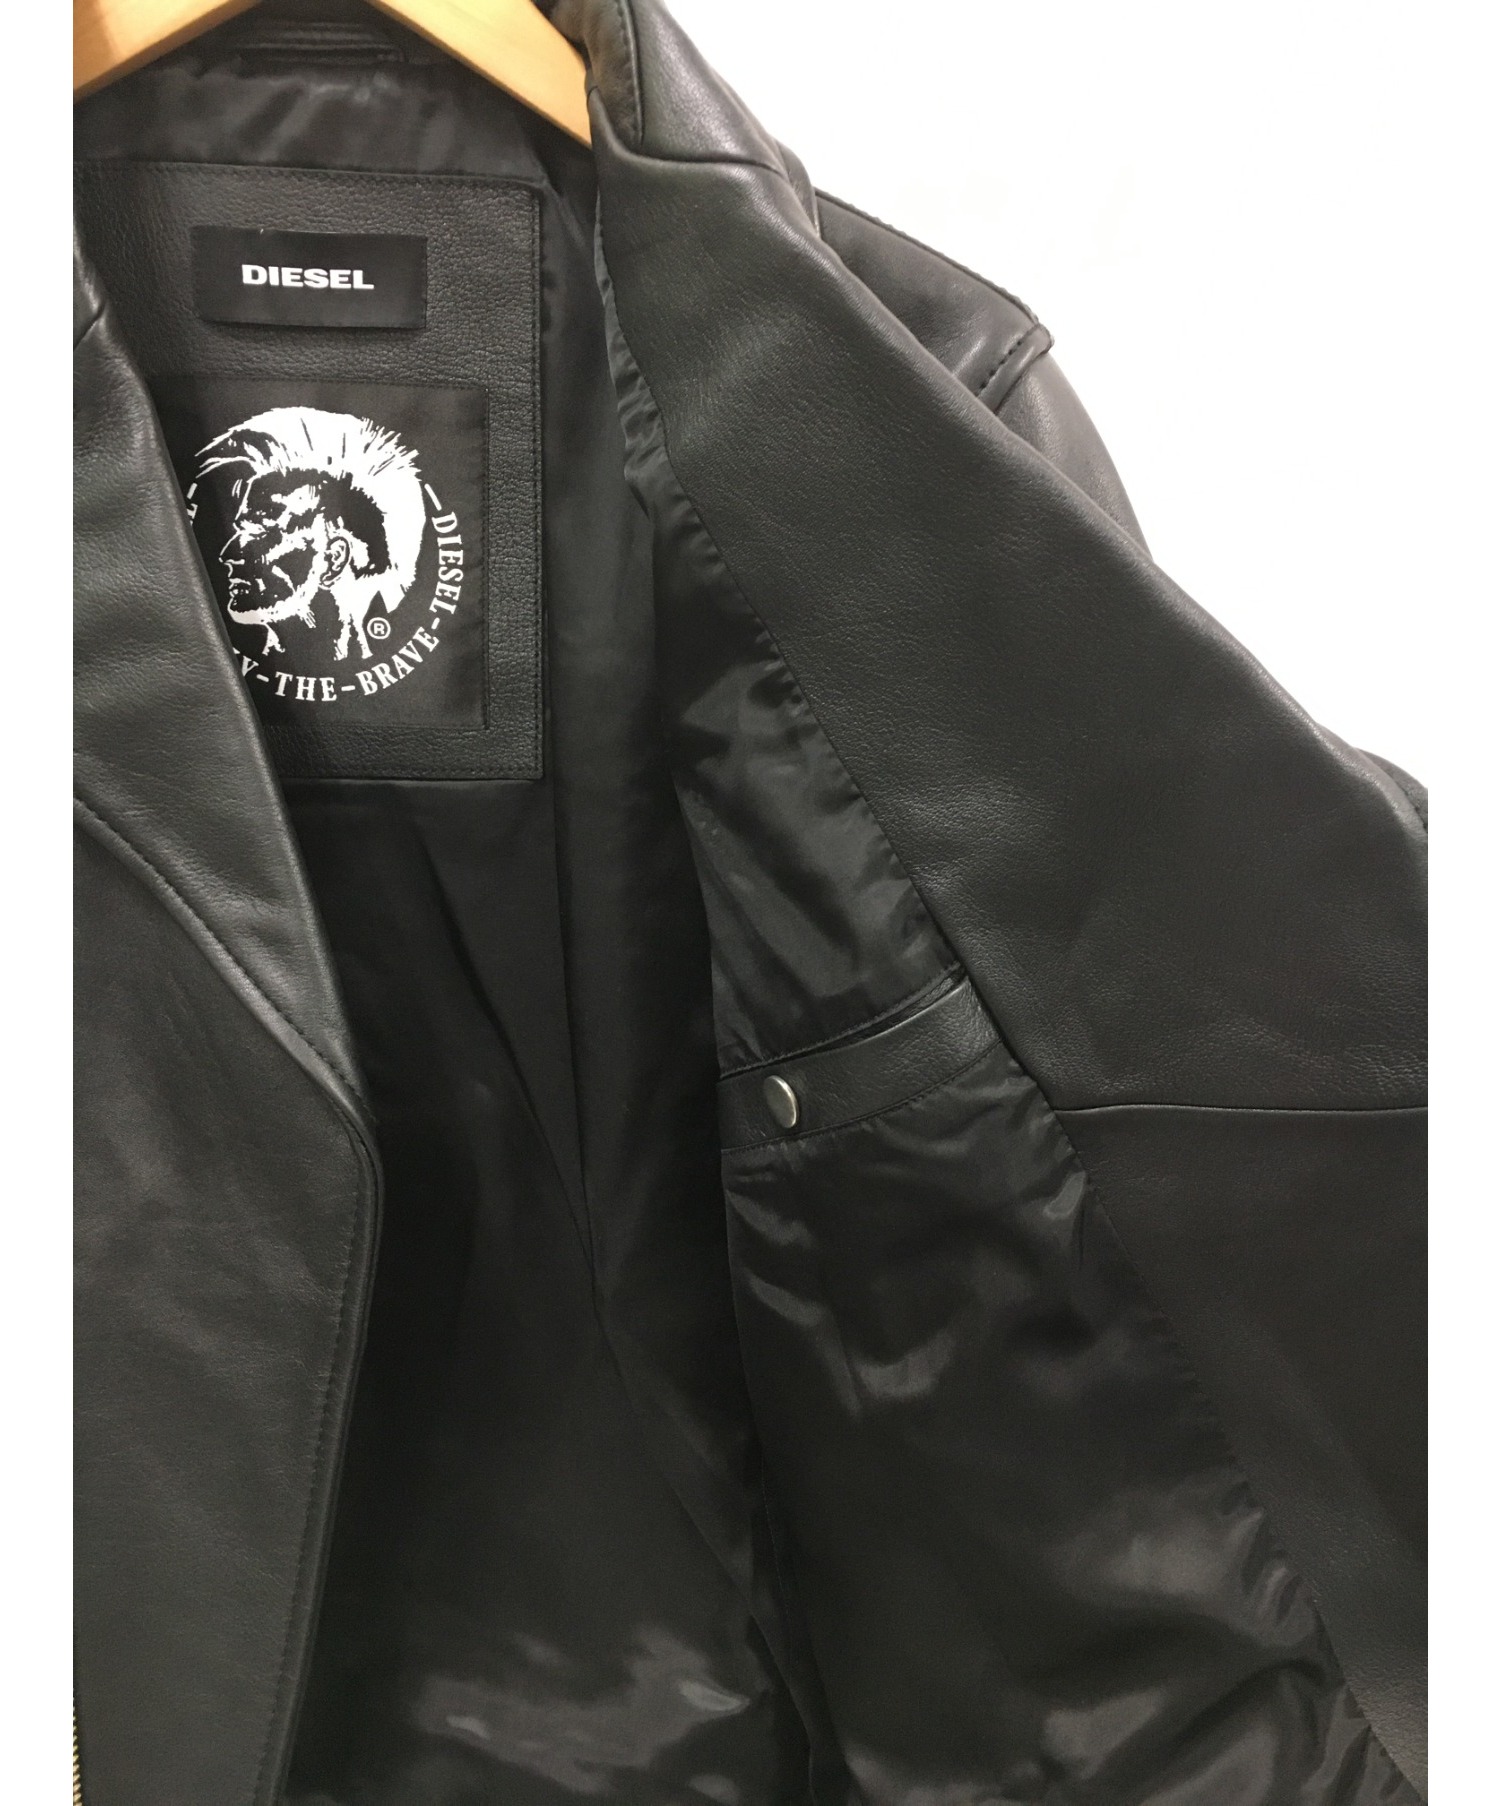 DIESEL (ディーゼル) ダブルライダースジャケット ブラック サイズ:S